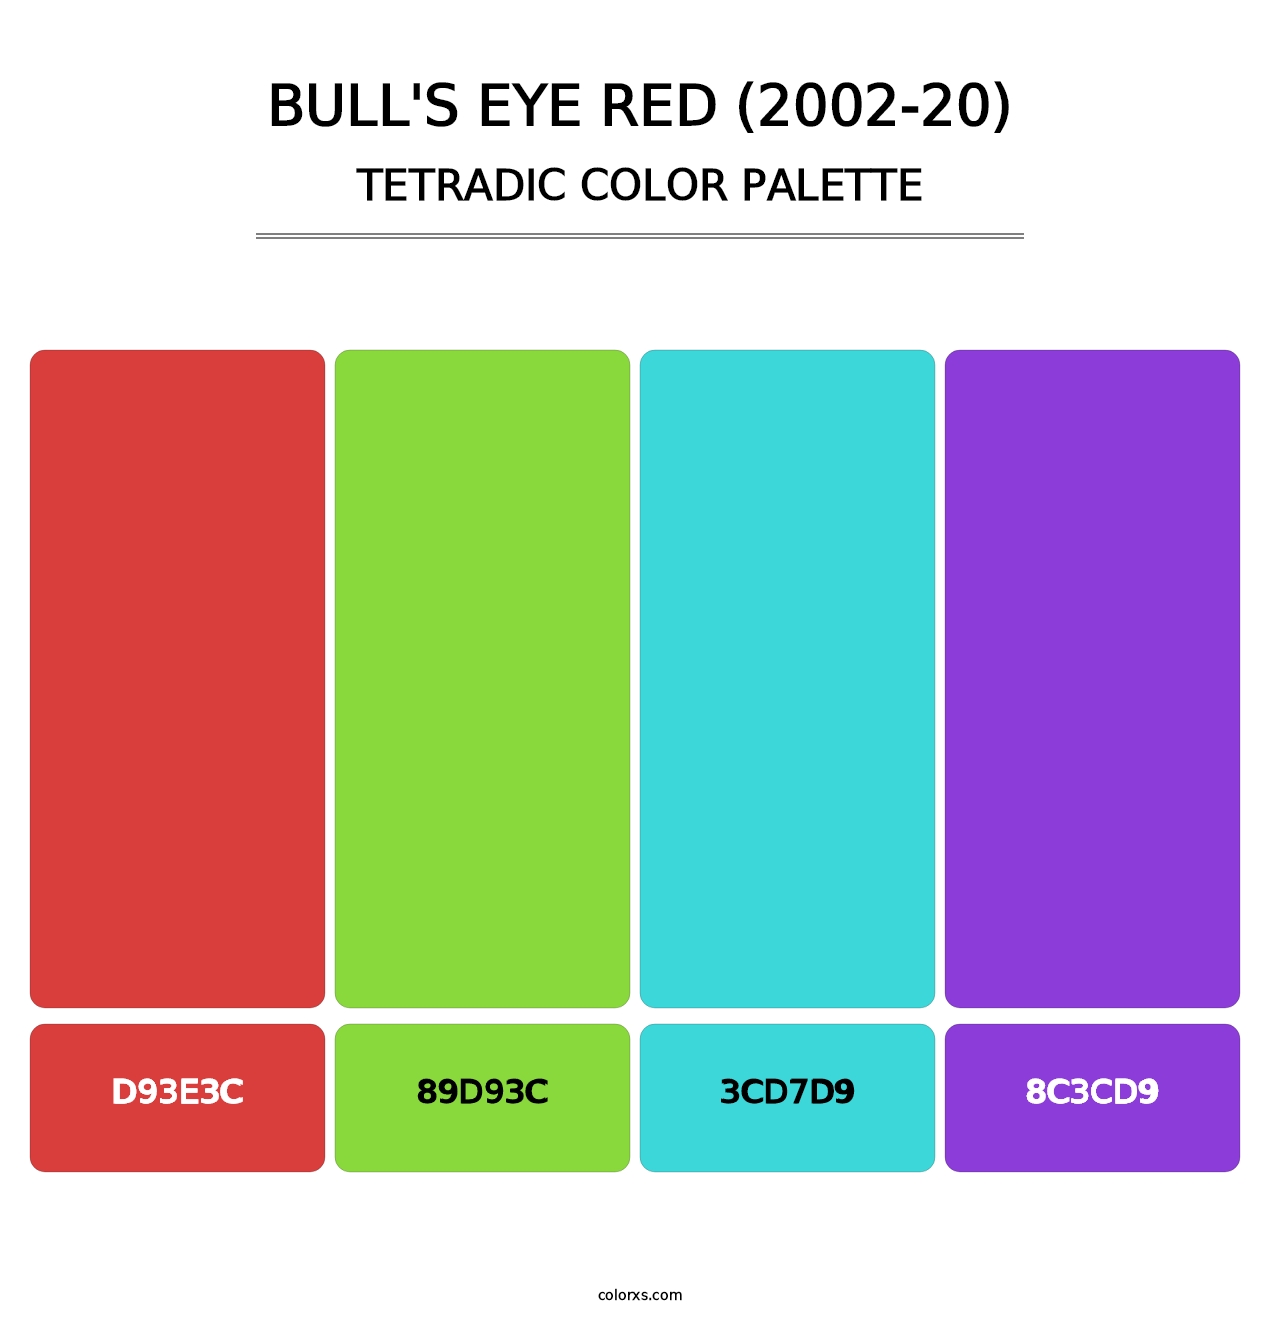 Bull's Eye Red (2002-20) - Tetradic Color Palette